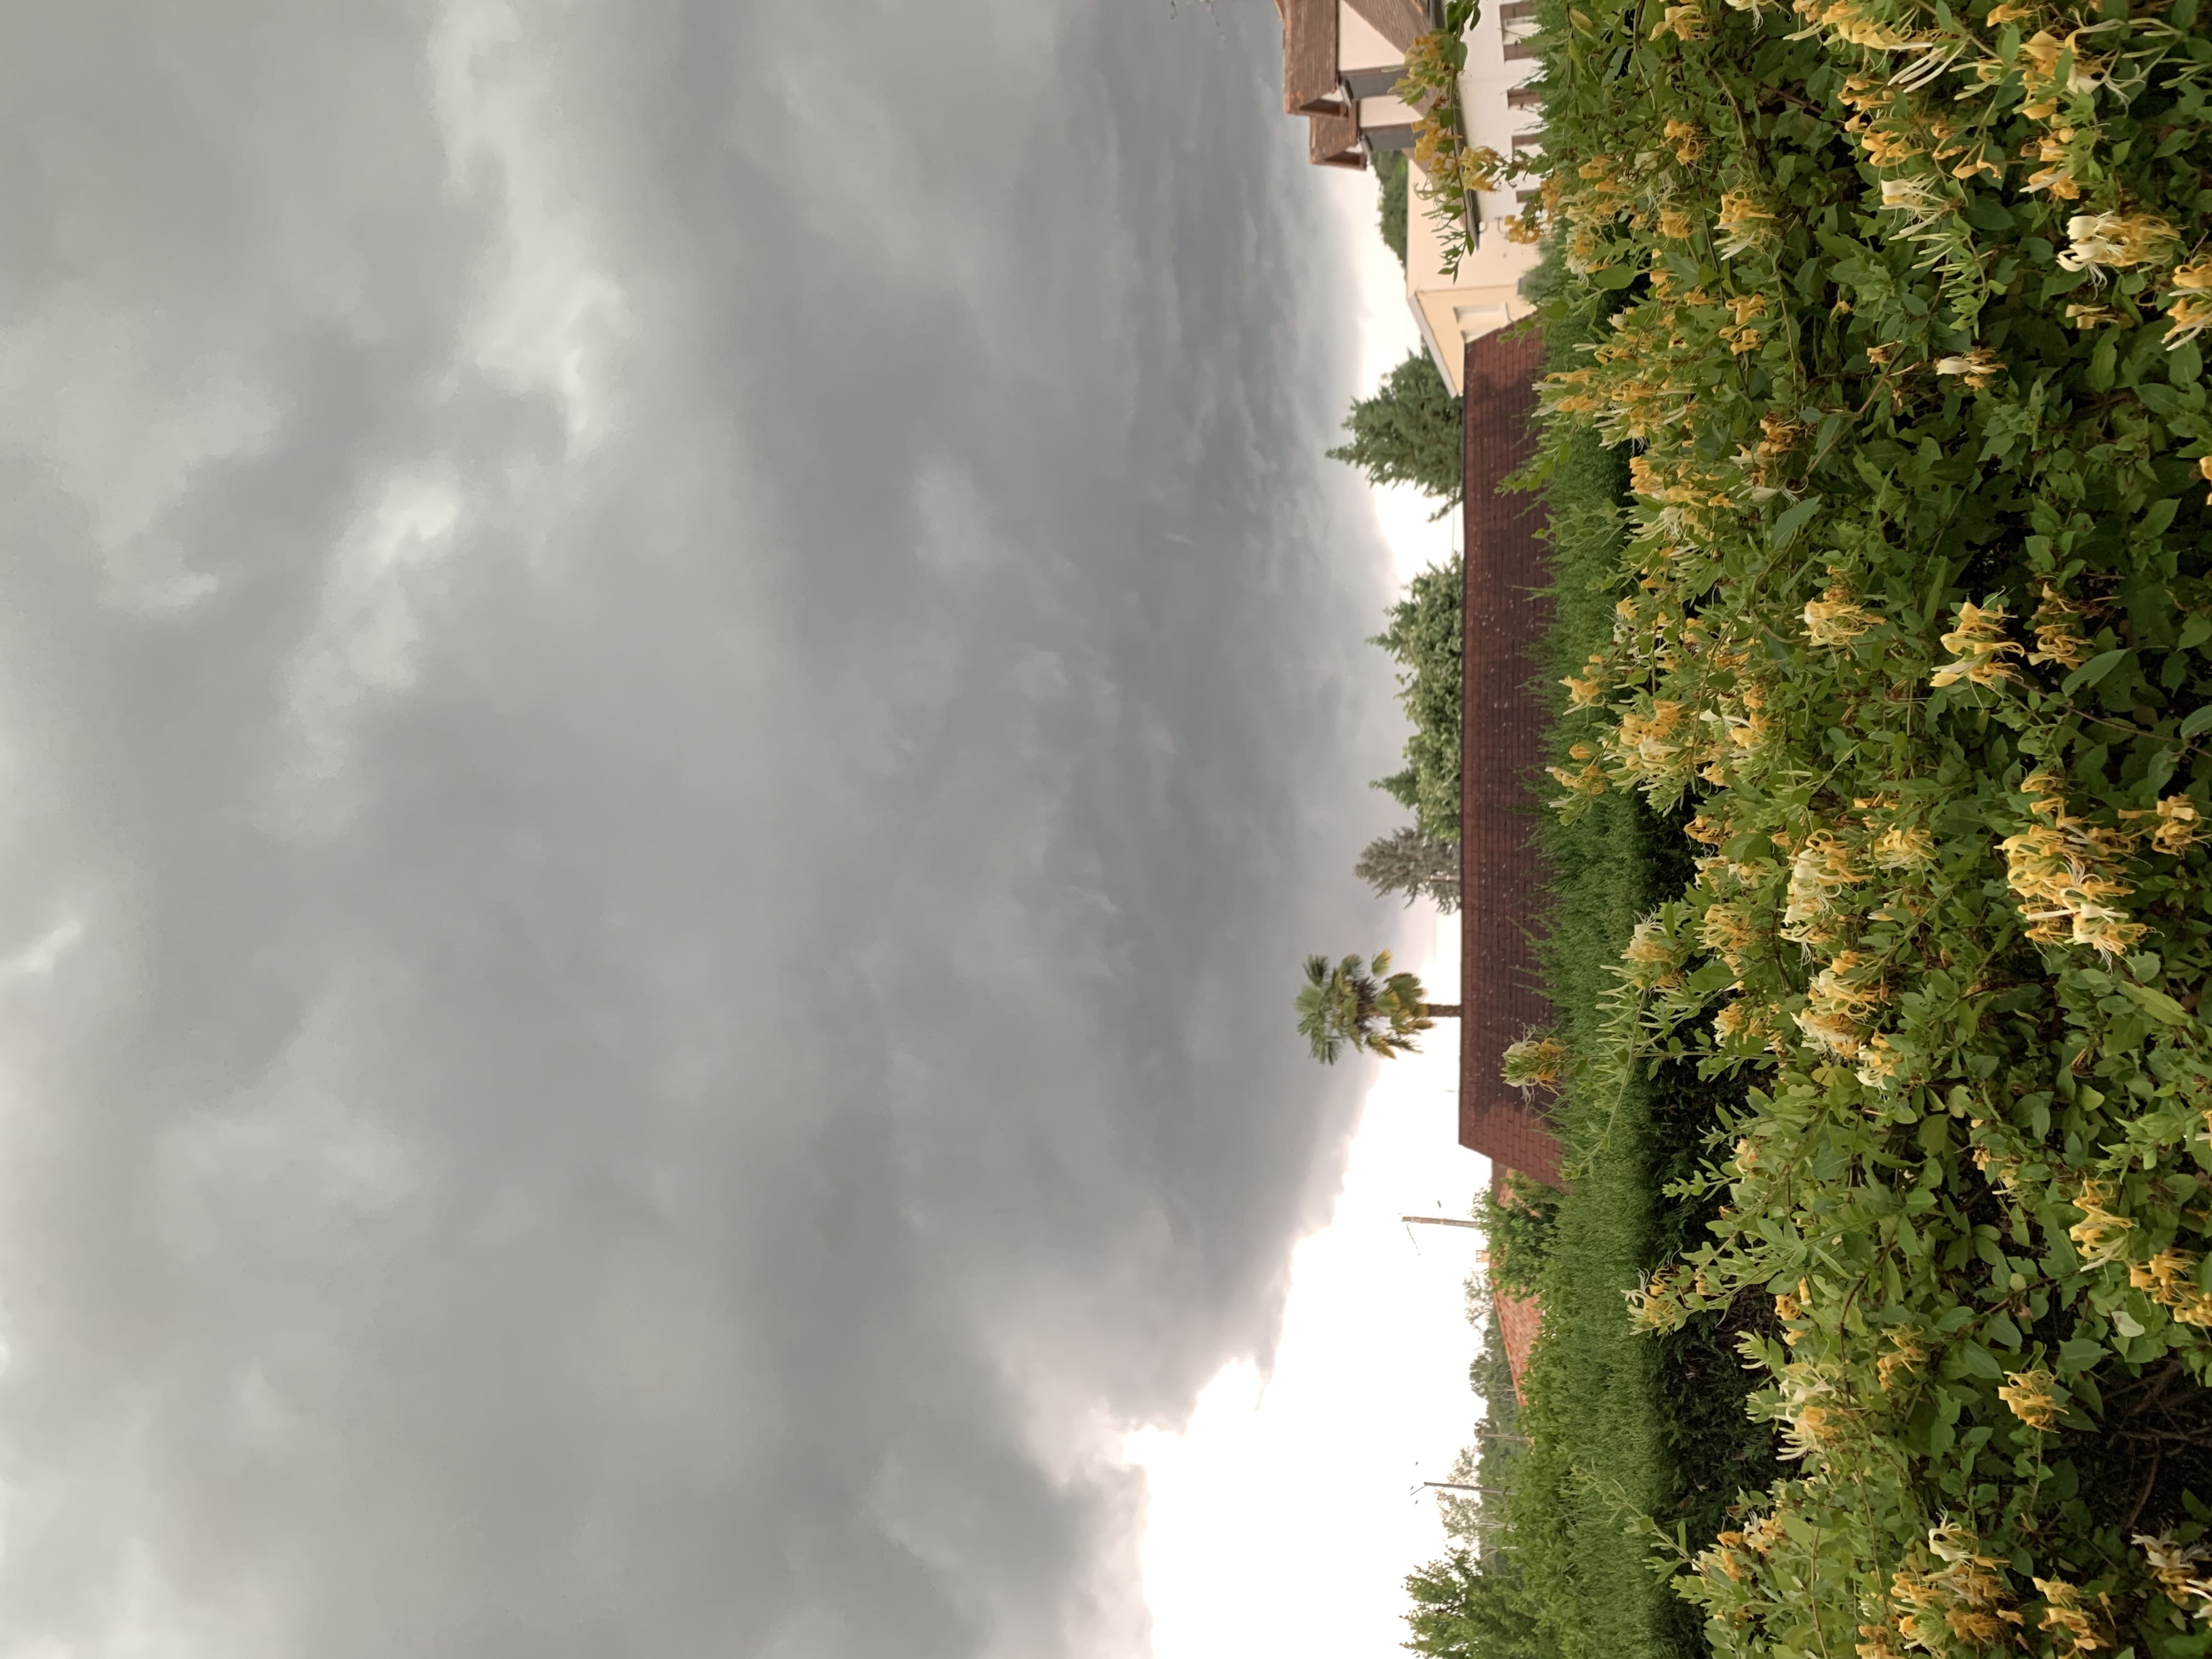 Cellule orageuse au dessus de Bergerac, Dordogne. - 19/06/2021 15:16 - Donny Hawk